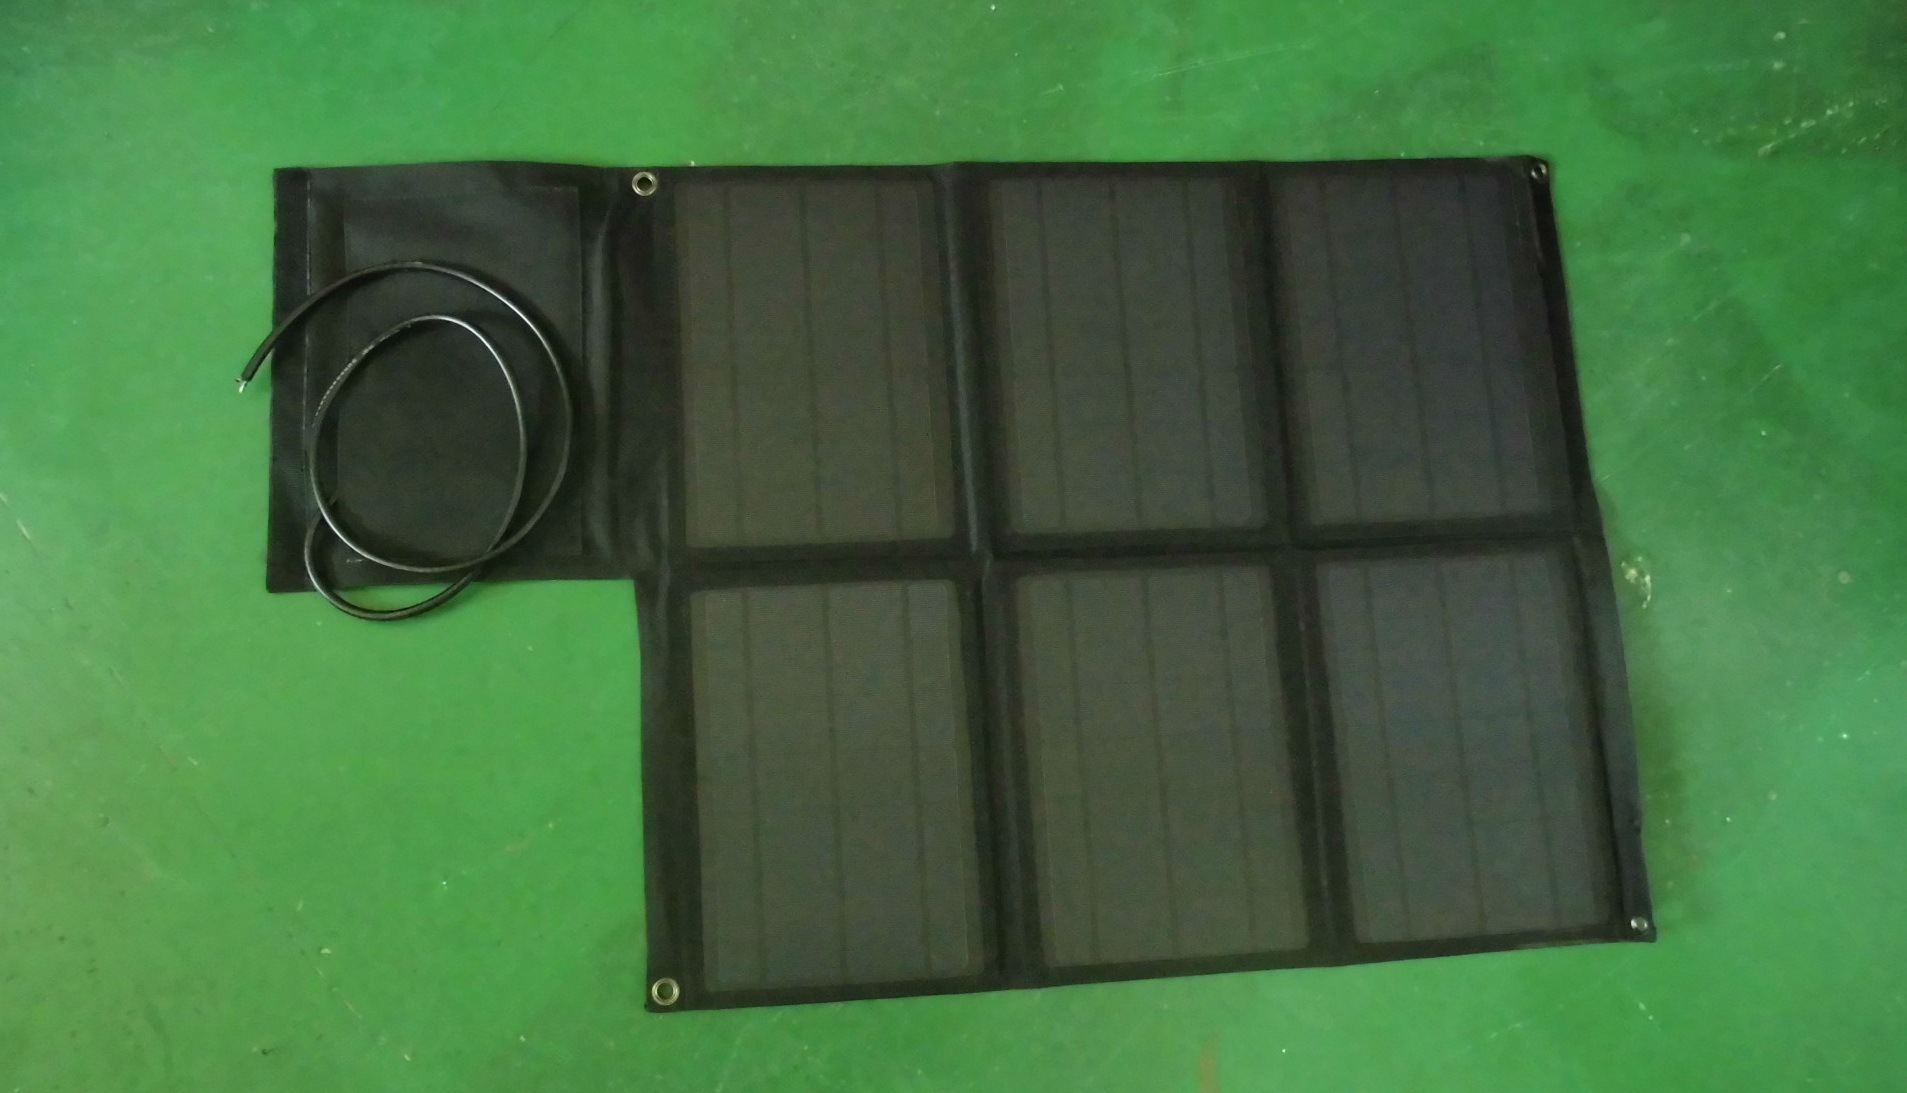 Chargeur solaire - 21 V - batterie Sans batterie mAh - Ref 3395488 Image 1